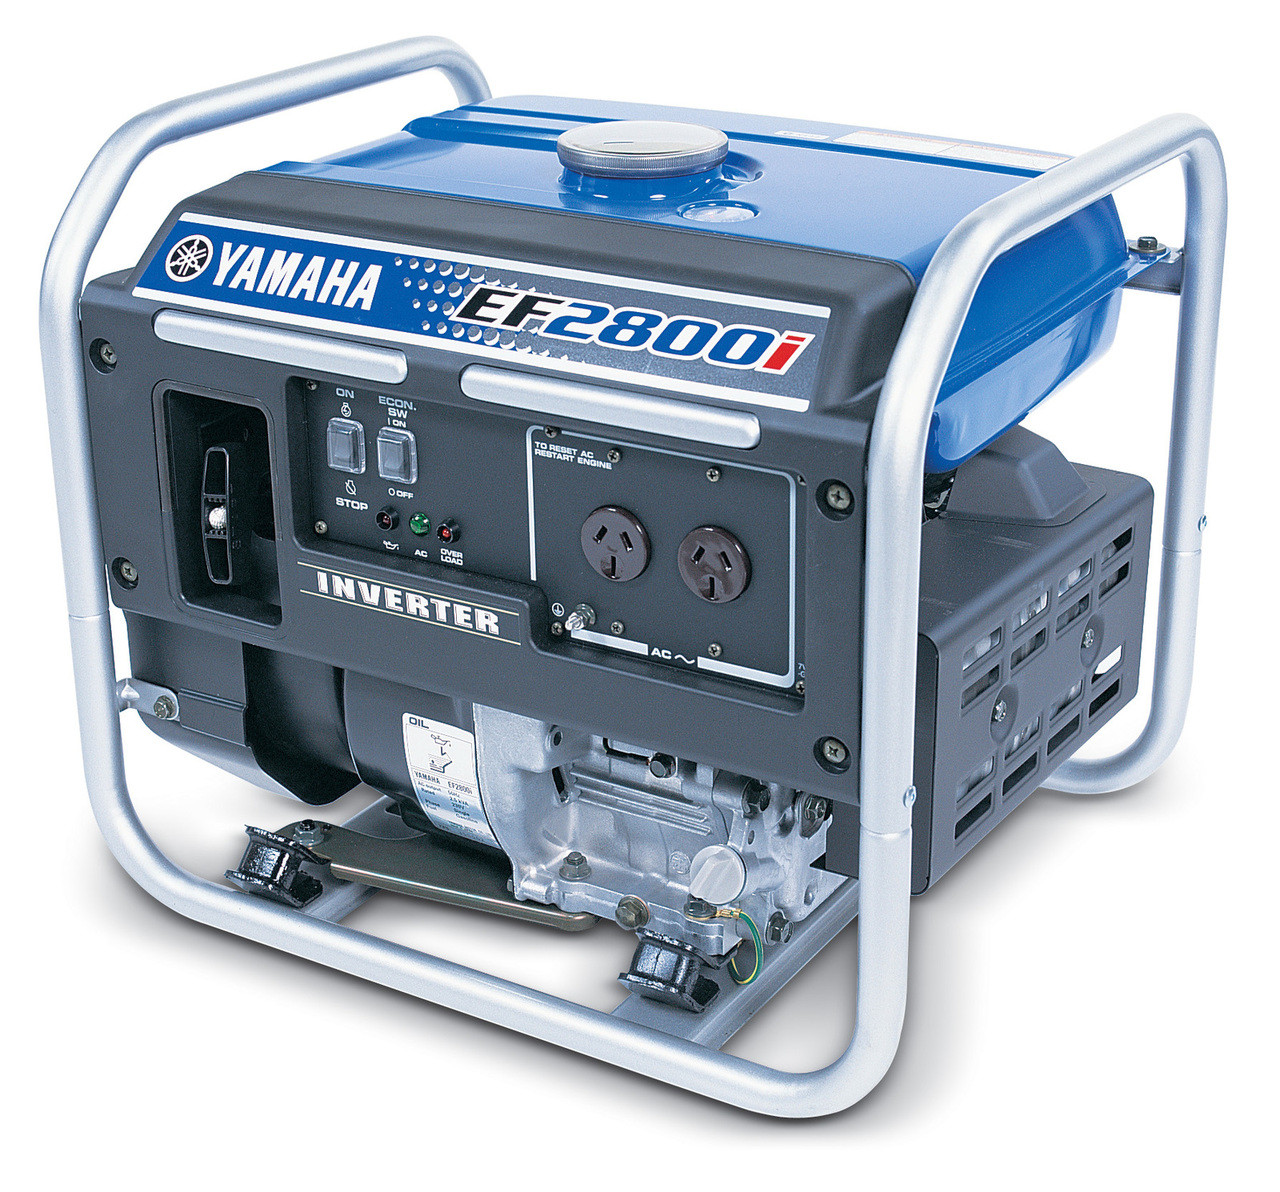 Yamaha EF2800i inverter generator